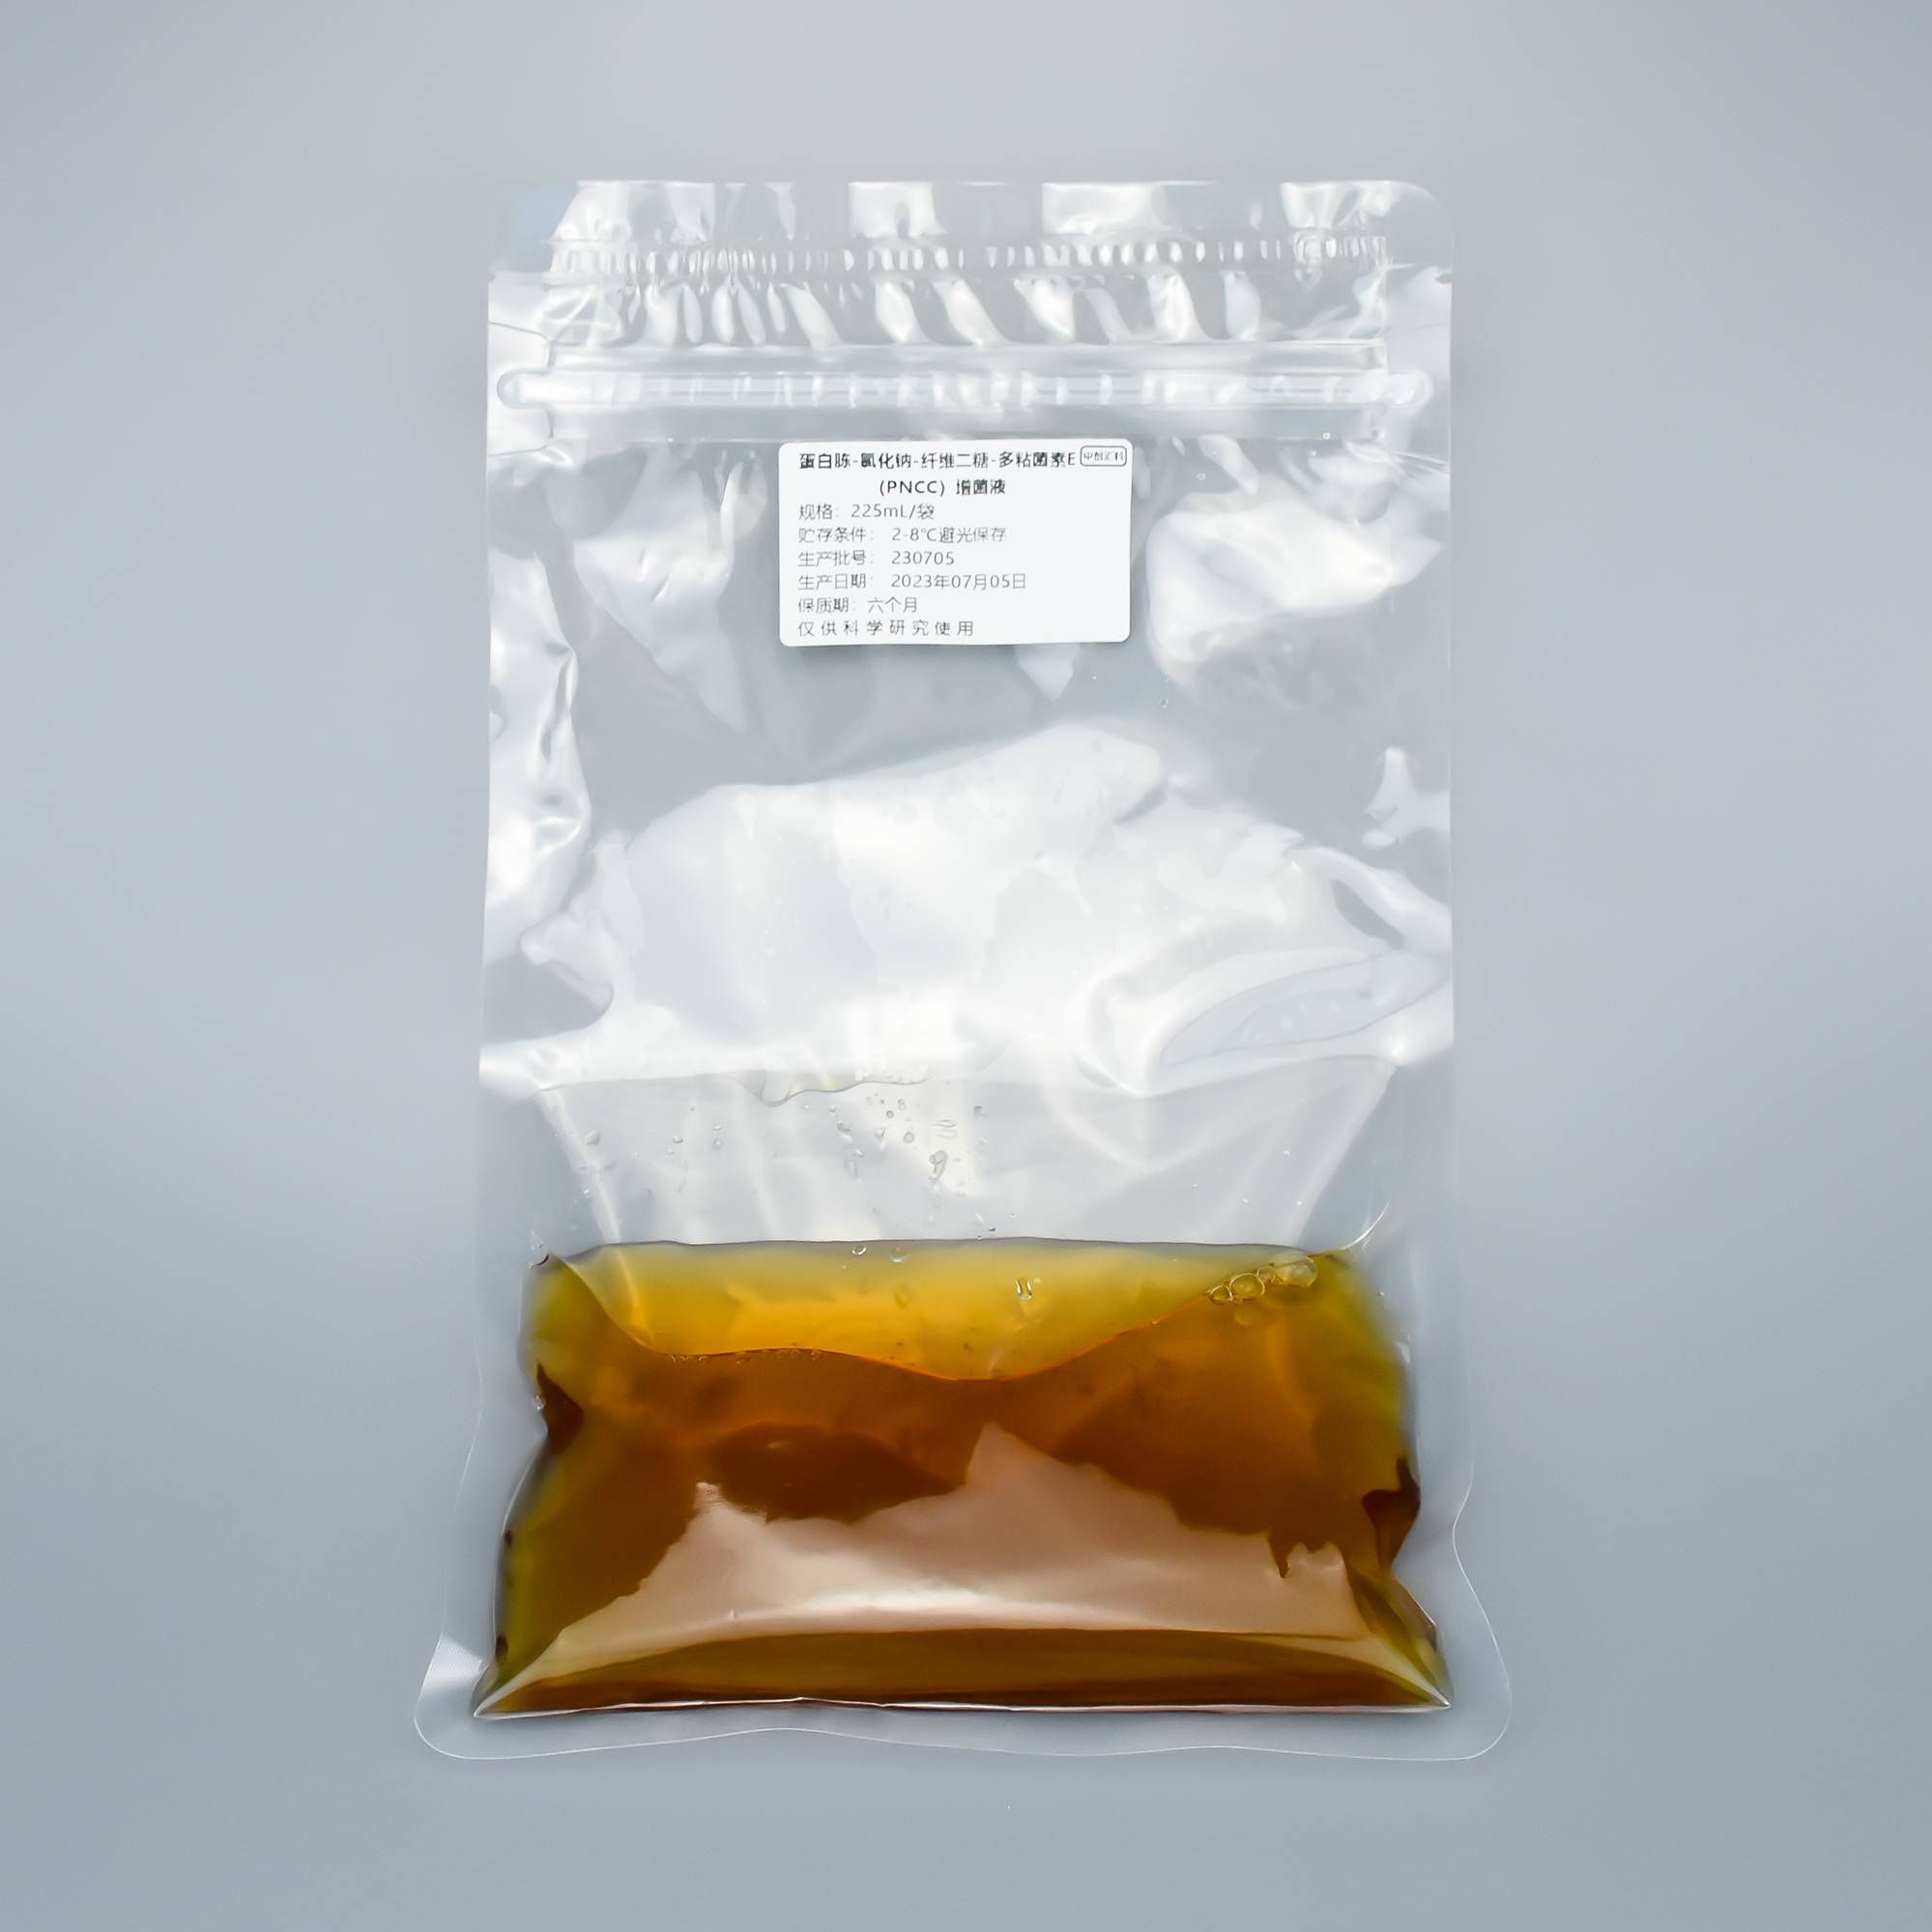 蛋白胨-氯化钠-纤维二糖-多粘菌素E（PNCC）增菌液